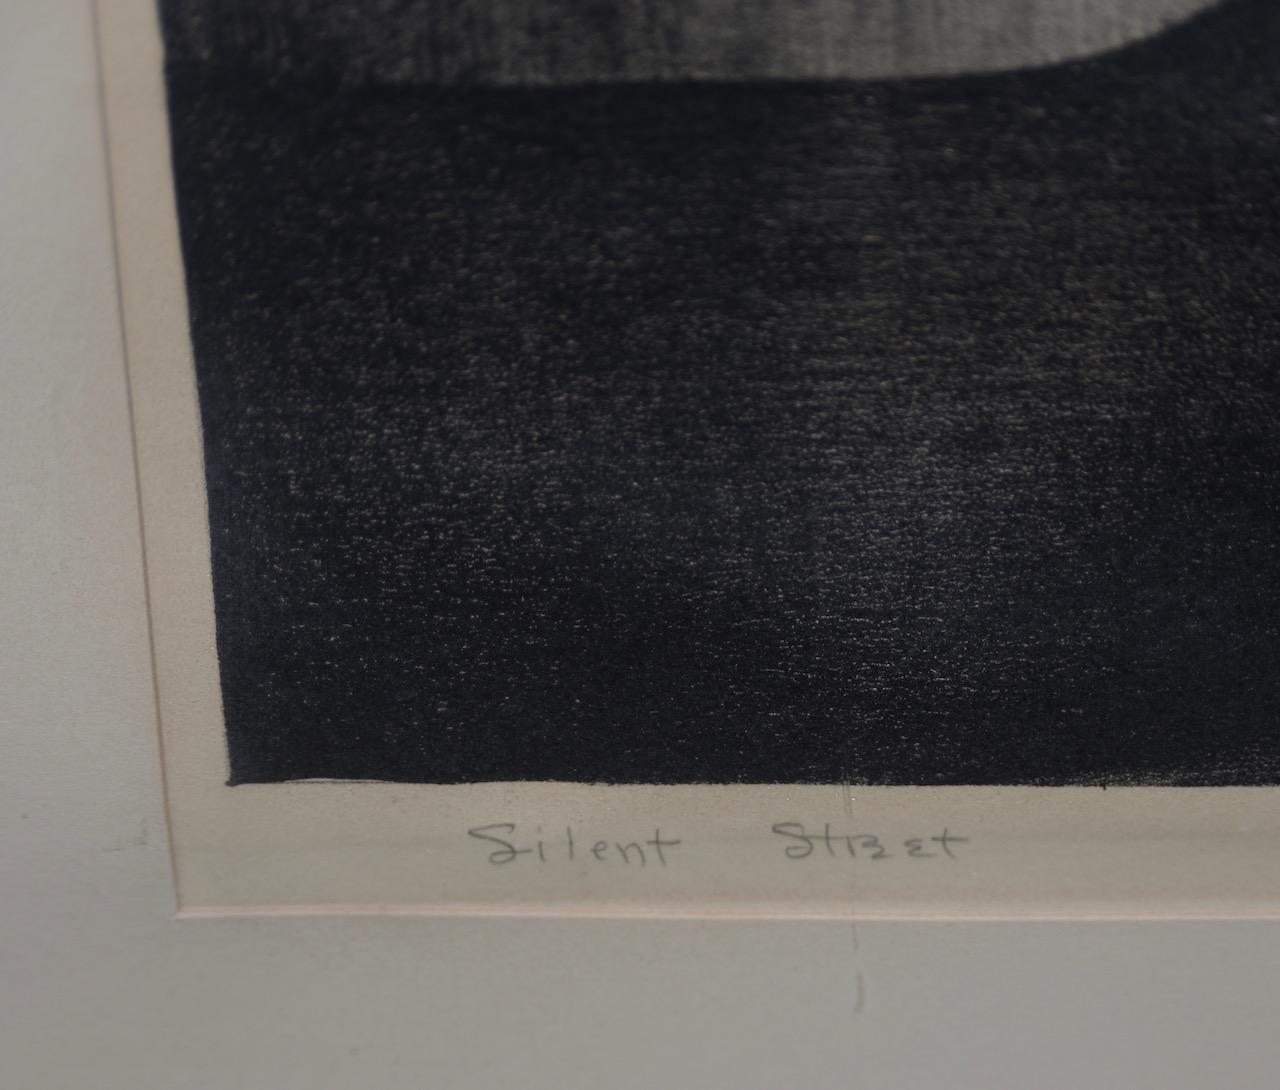 Signierte Lithographie „Silent Street“ von William Gray, ca. 1930er Jahre (Art déco), Print, von Alfred Gray